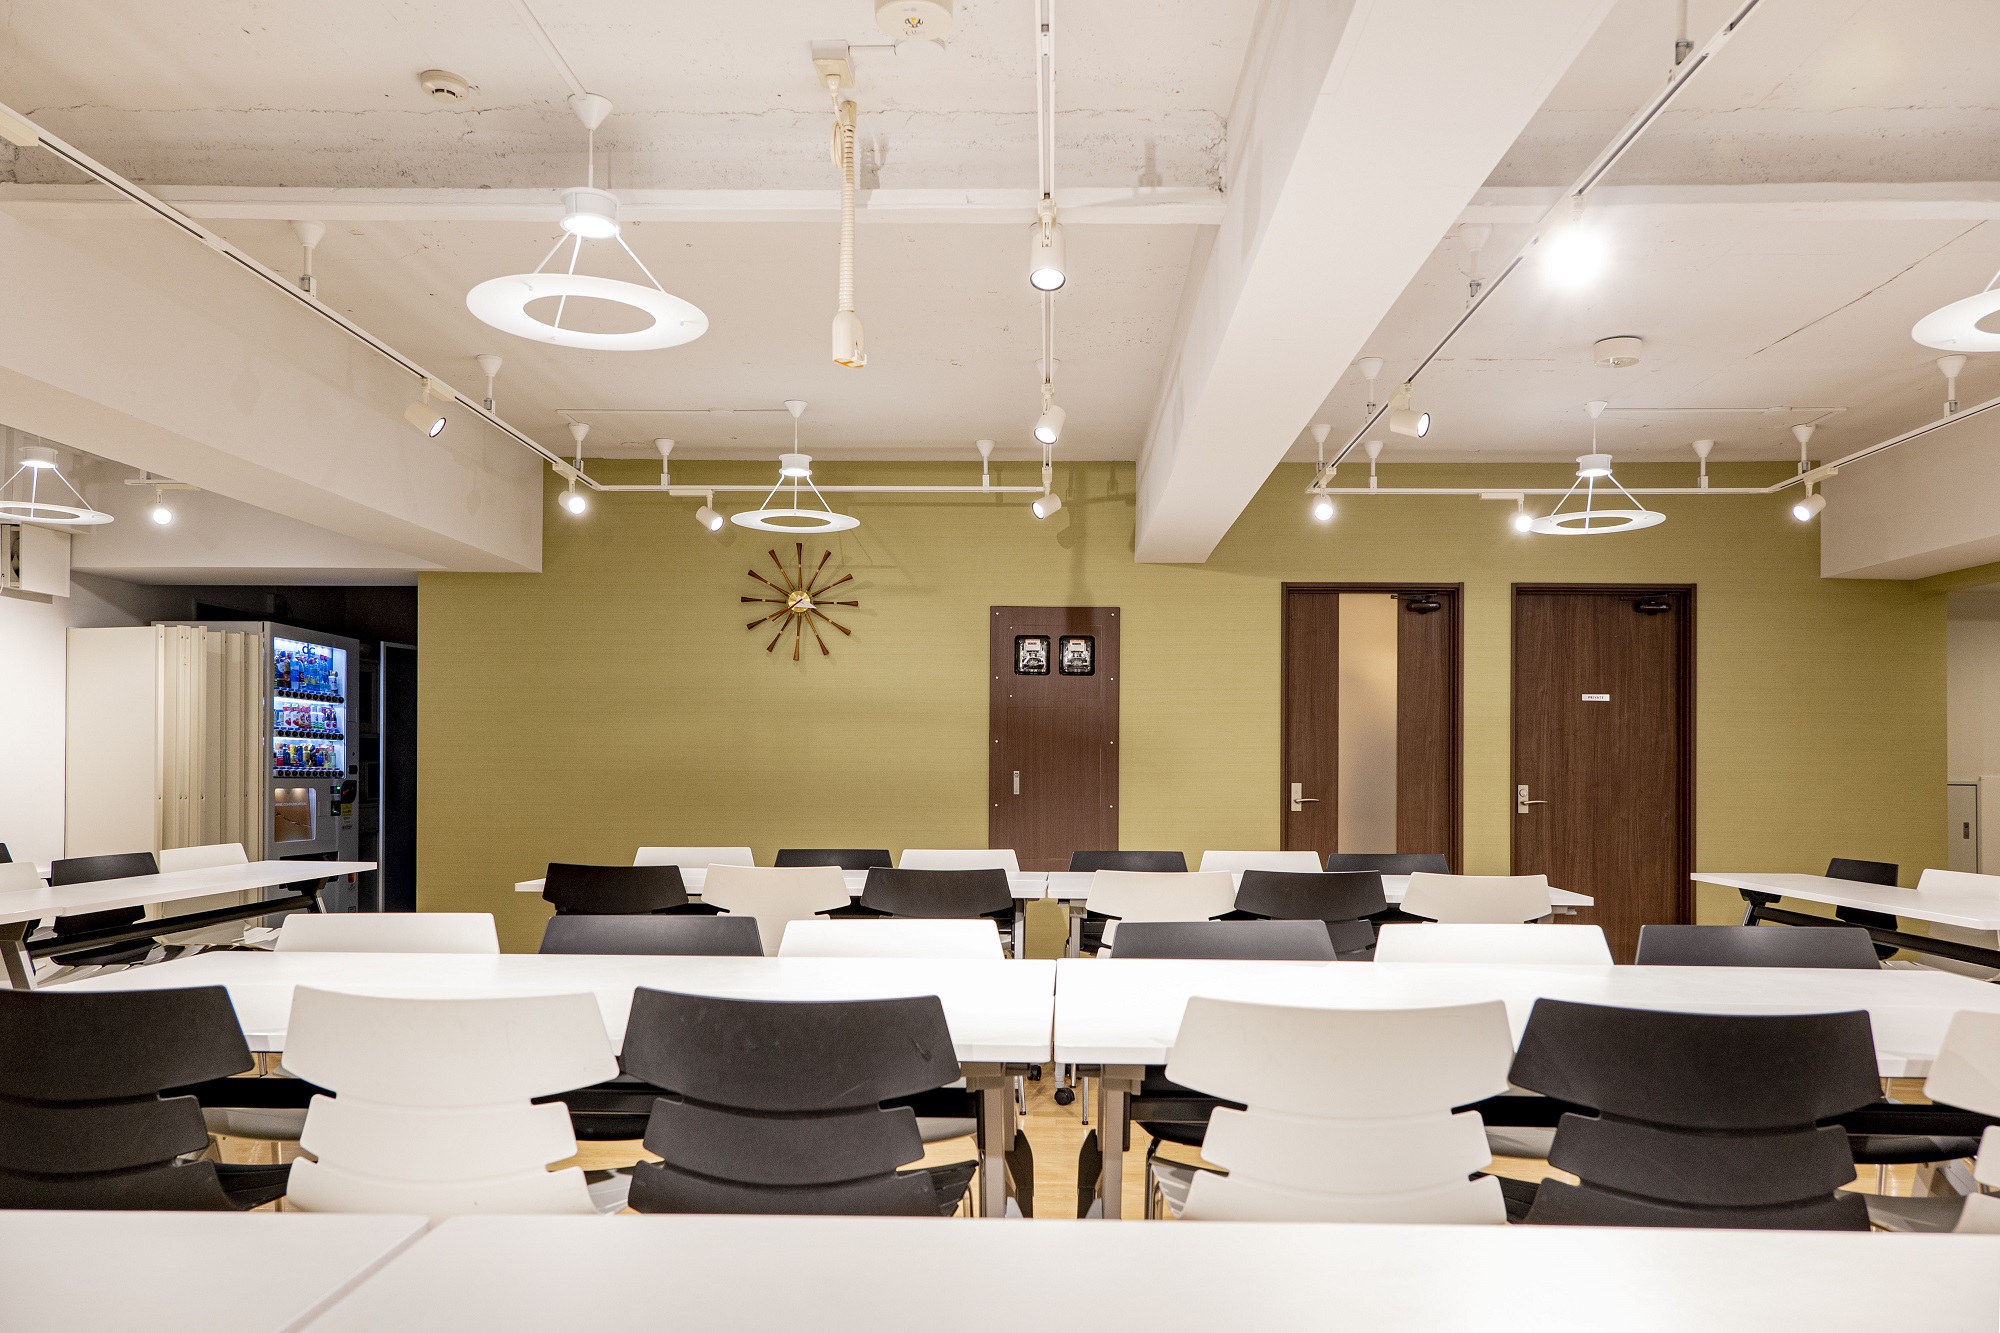 多目的ルームを中心に伝統と革新を表現したオフィスデザイン事例